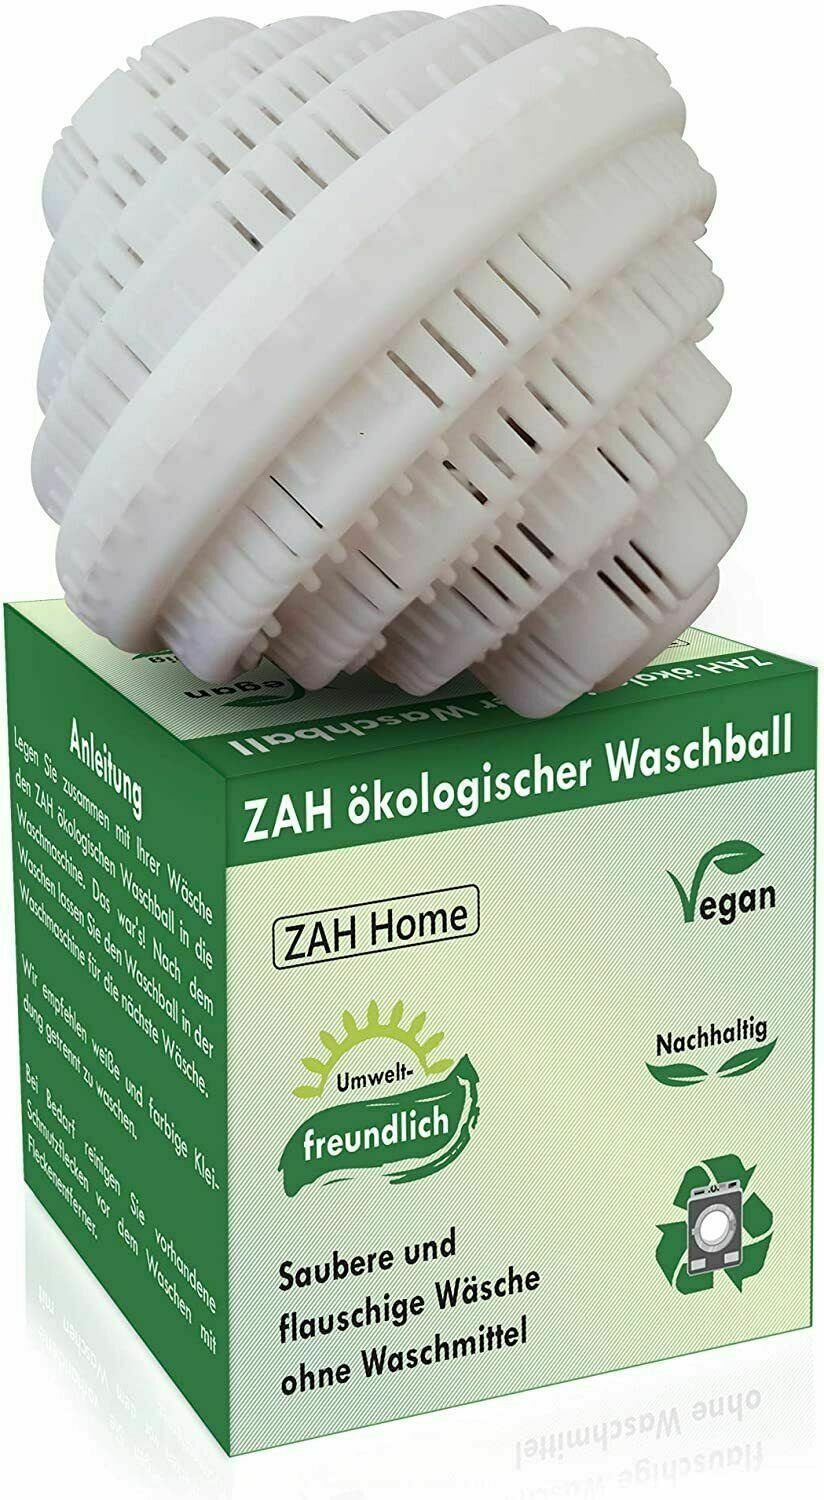 MAVURA Wäschekugel »ZAH ökologischer Waschball Öko Waschkugel Bio  Wäscheball Wäschekugel Wäsche Ball Wäsche Ei Waschmaschine Waschmittel  ersatz« online kaufen | OTTO